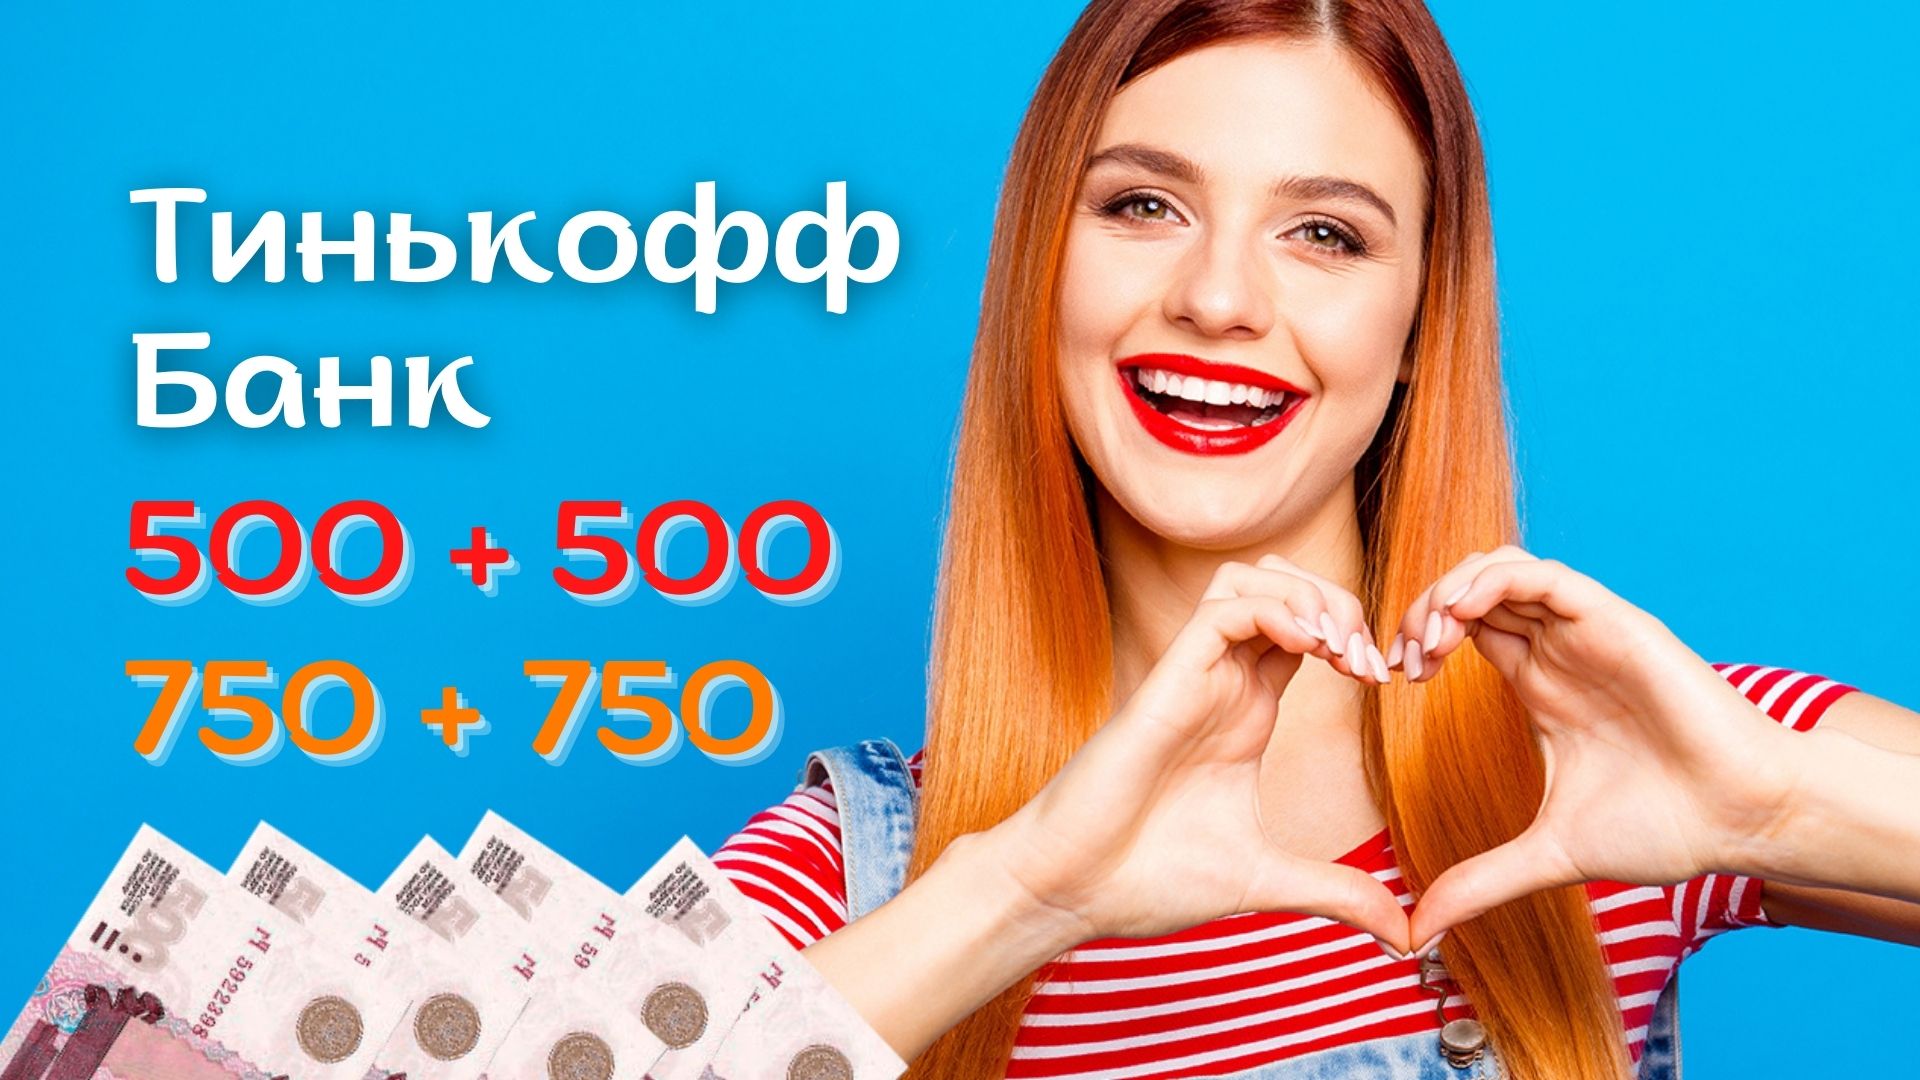 Тинькофф Банк заплатит по акции Приведи друга: по 500 - 750 рублей тебе и другу